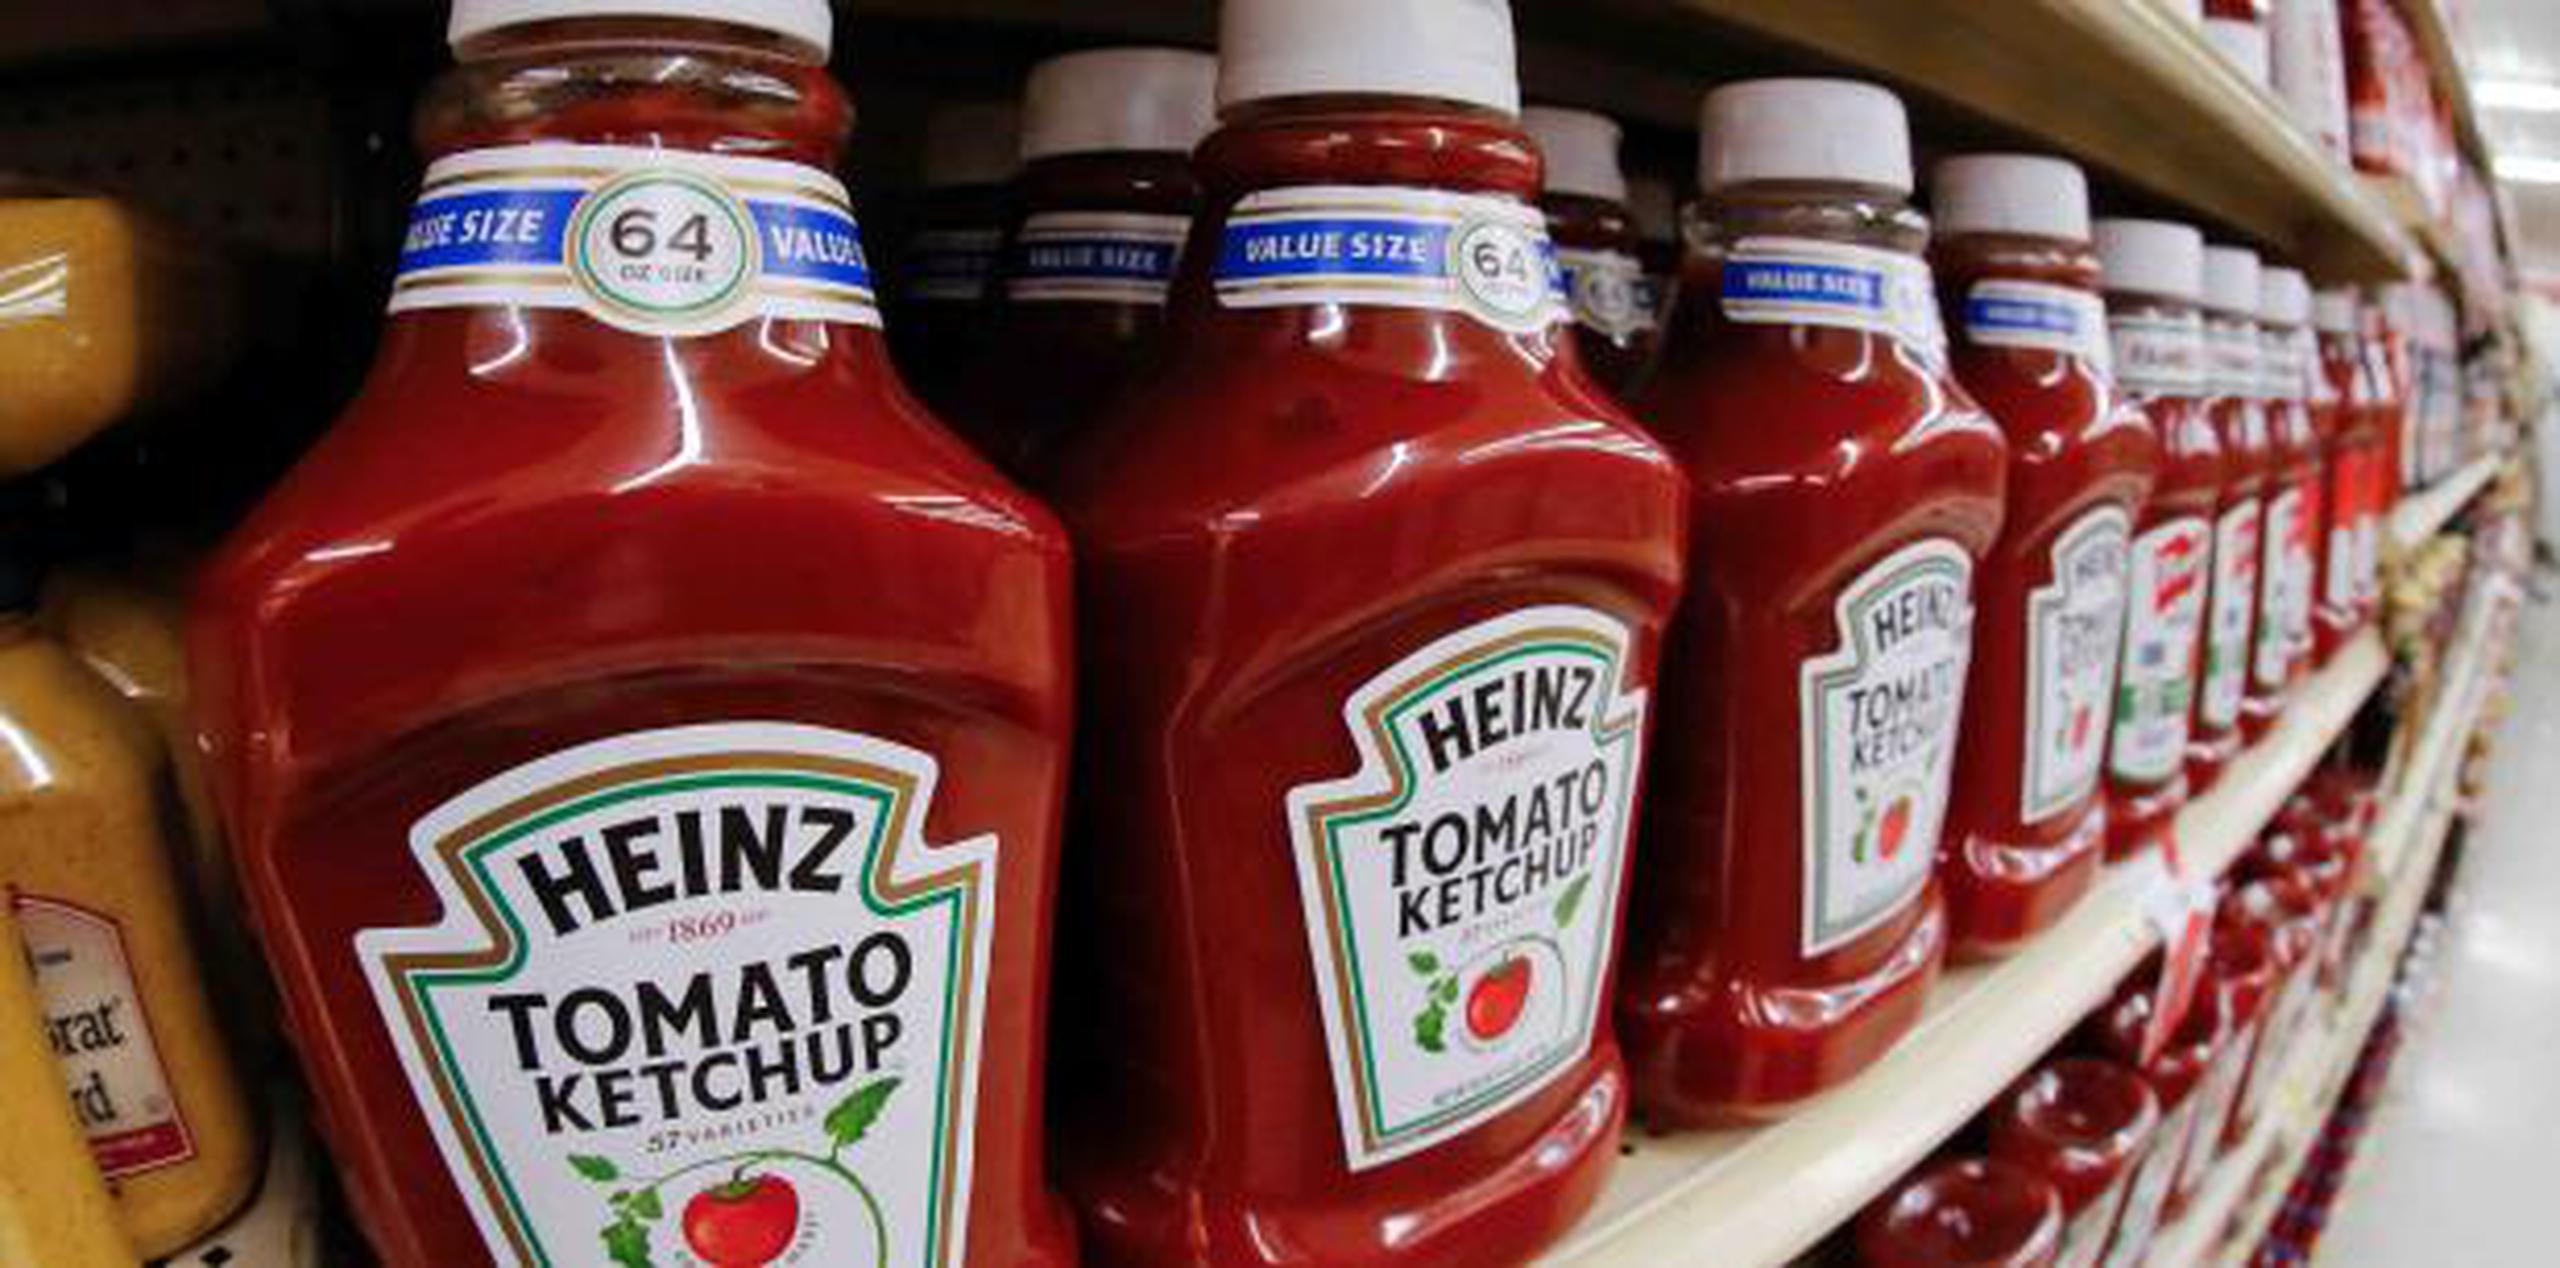 El viernes antes del mediodía, las acciones de Kraft Heinz habían perdido $16,000 millones en valor de mercado. (AP / Gene J. Puskar / Archivo)